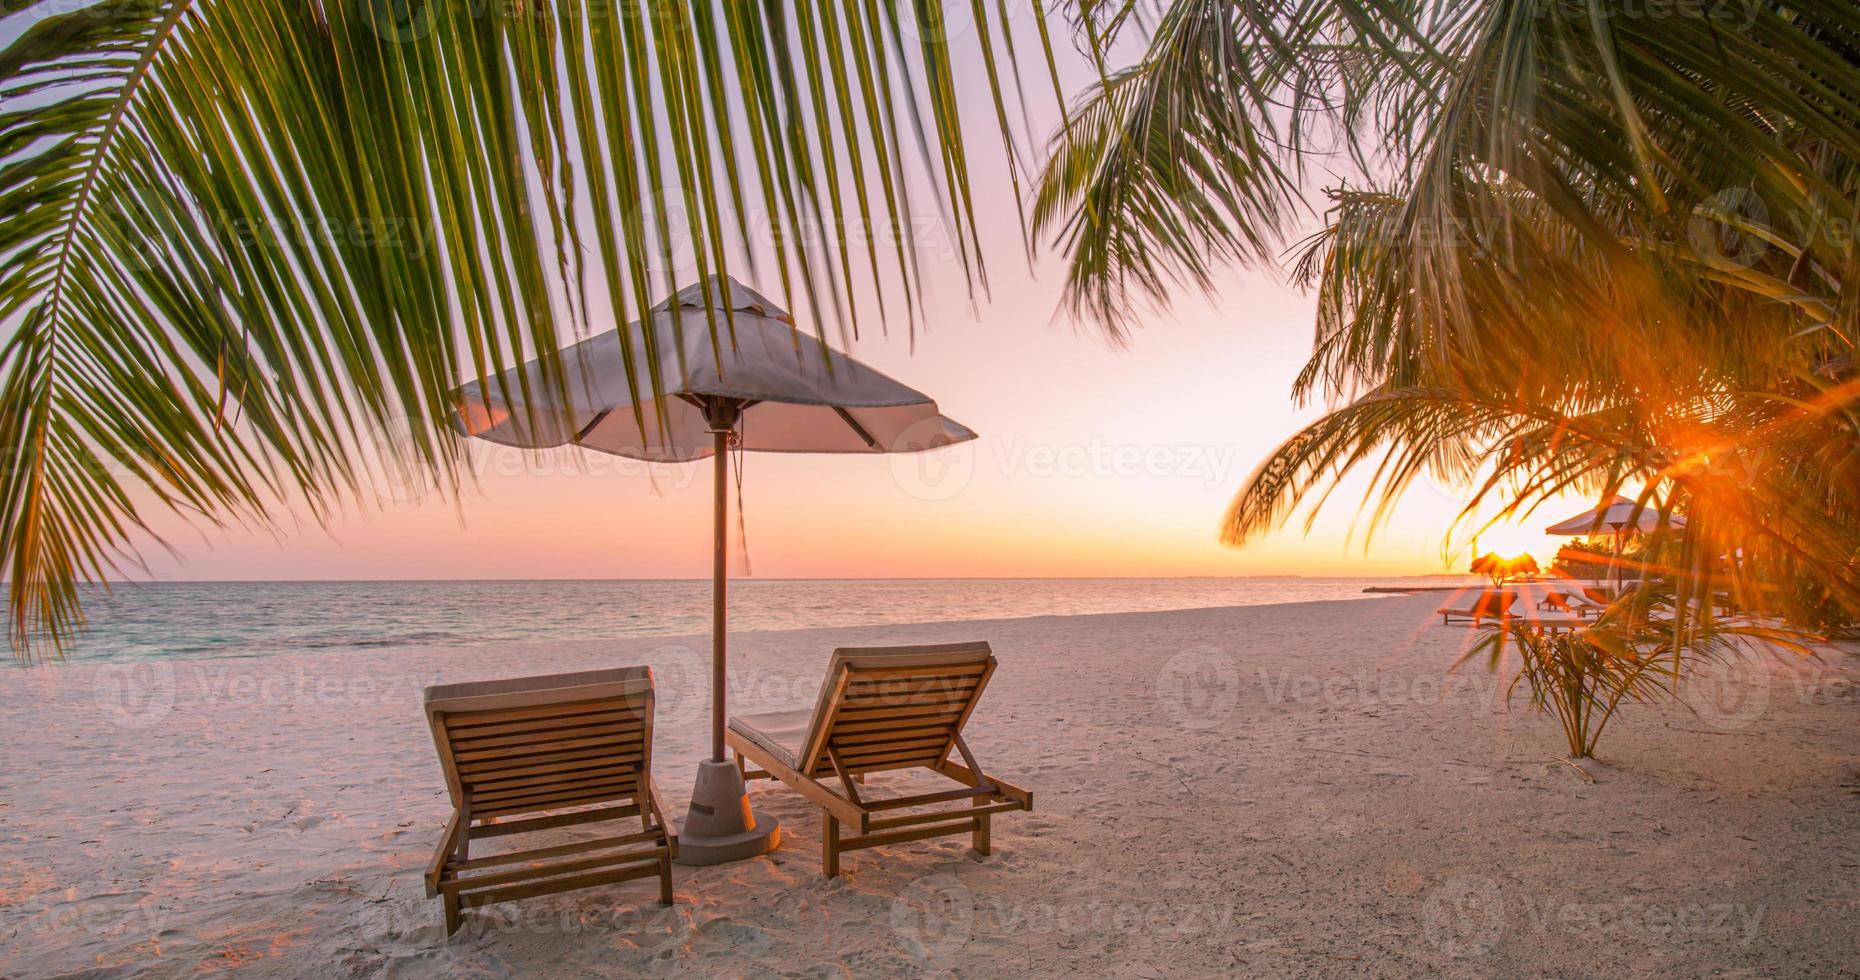 vackert tropiskt solnedgångslandskap, två solstolar, solstolar, paraply under palmen. vit sand, havsutsikt med horisont, färgglad skymningshimmel, lugn och avkoppling. inspirerande strandhotell foto